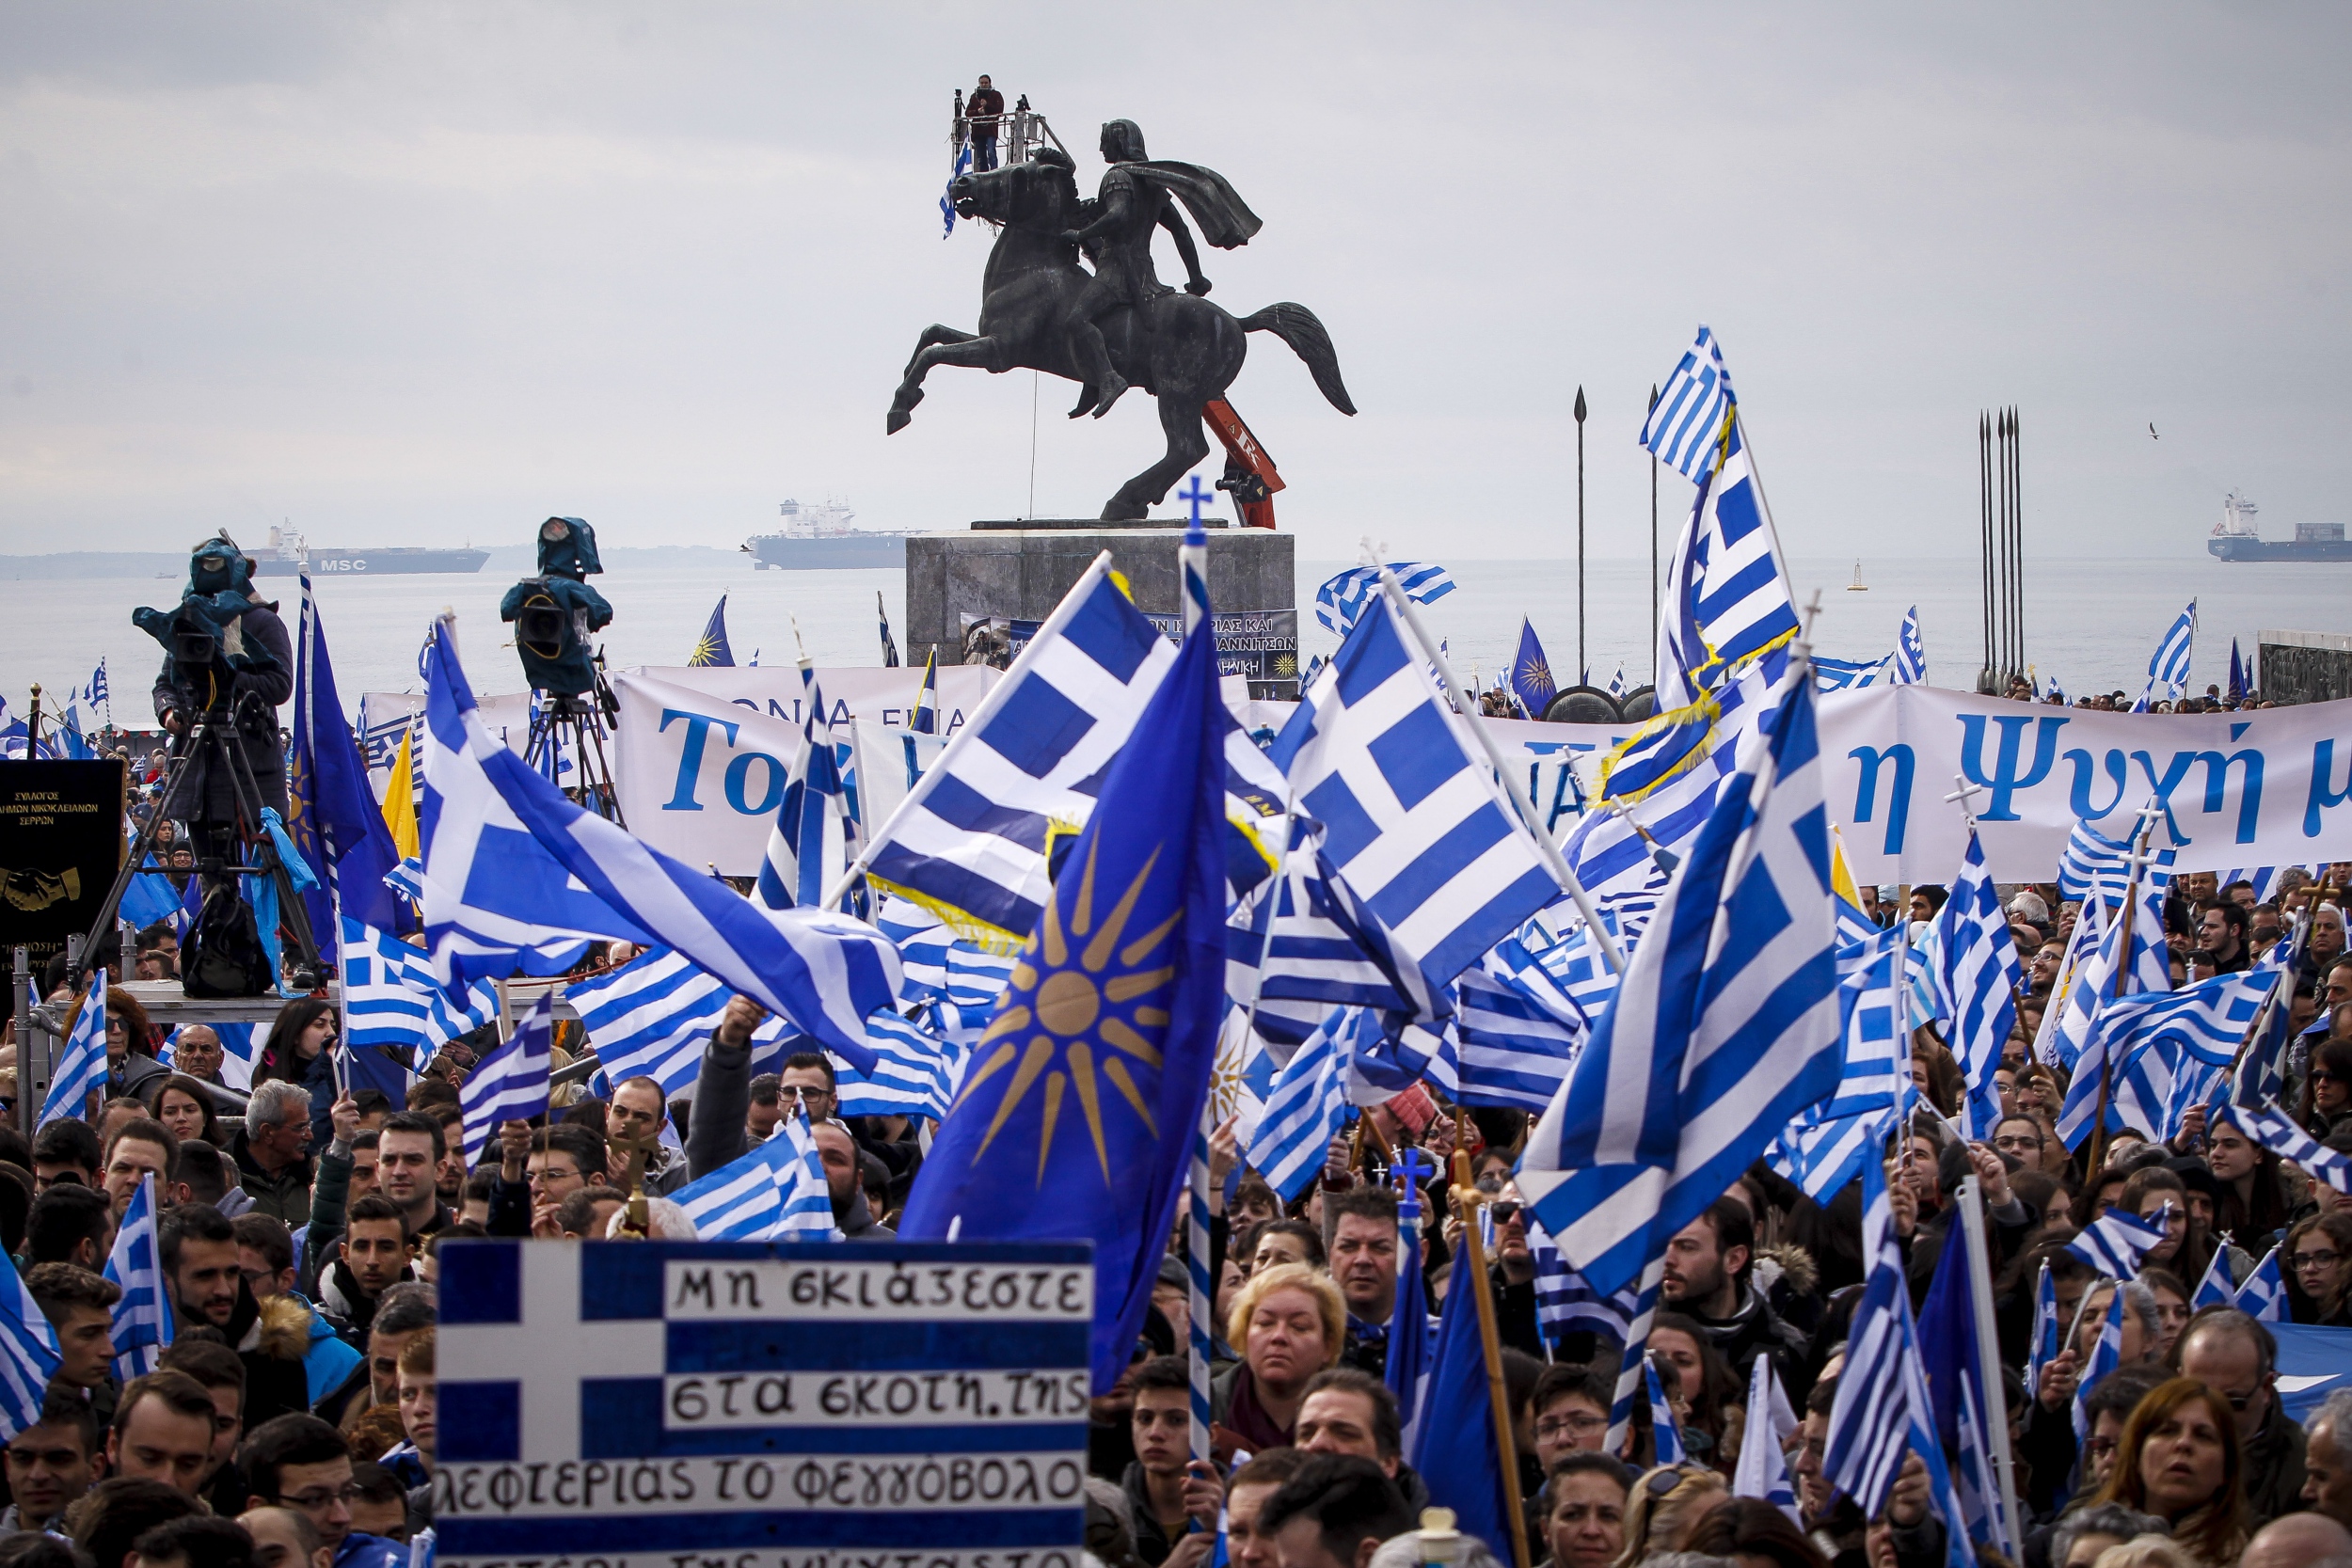 Ταξιδιωτική οδηγία από το υπουργείο Εξωτερικών των Σκοπίων: «Μην πάτε σε ελληνικές πόλεις που γίνονται συλλαλητήρια»!